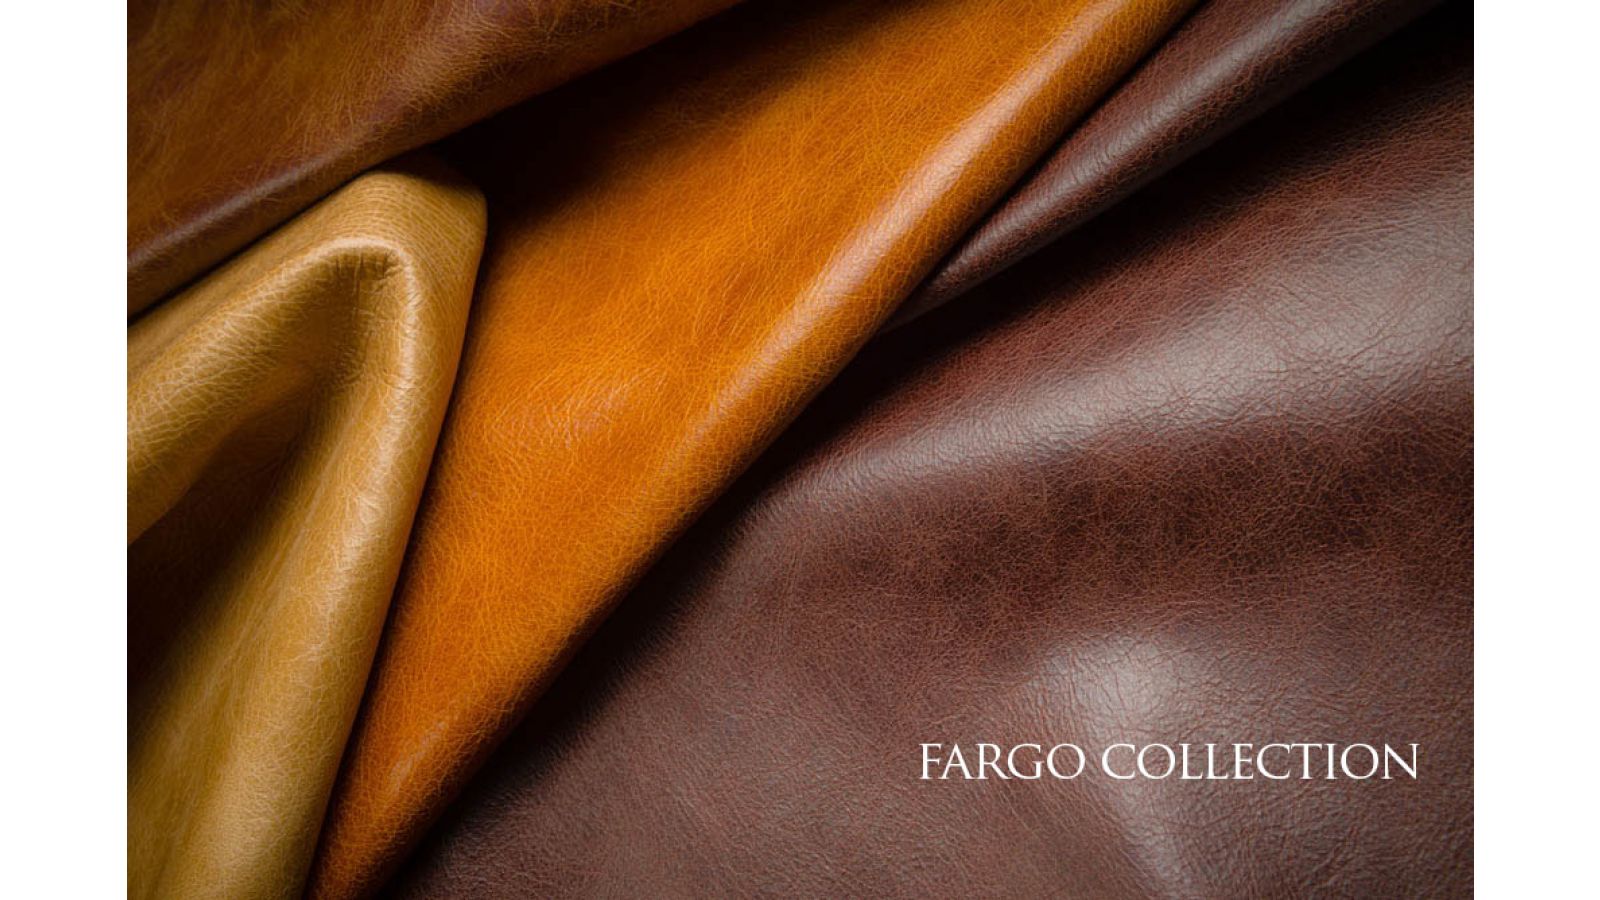 Fargo Collection